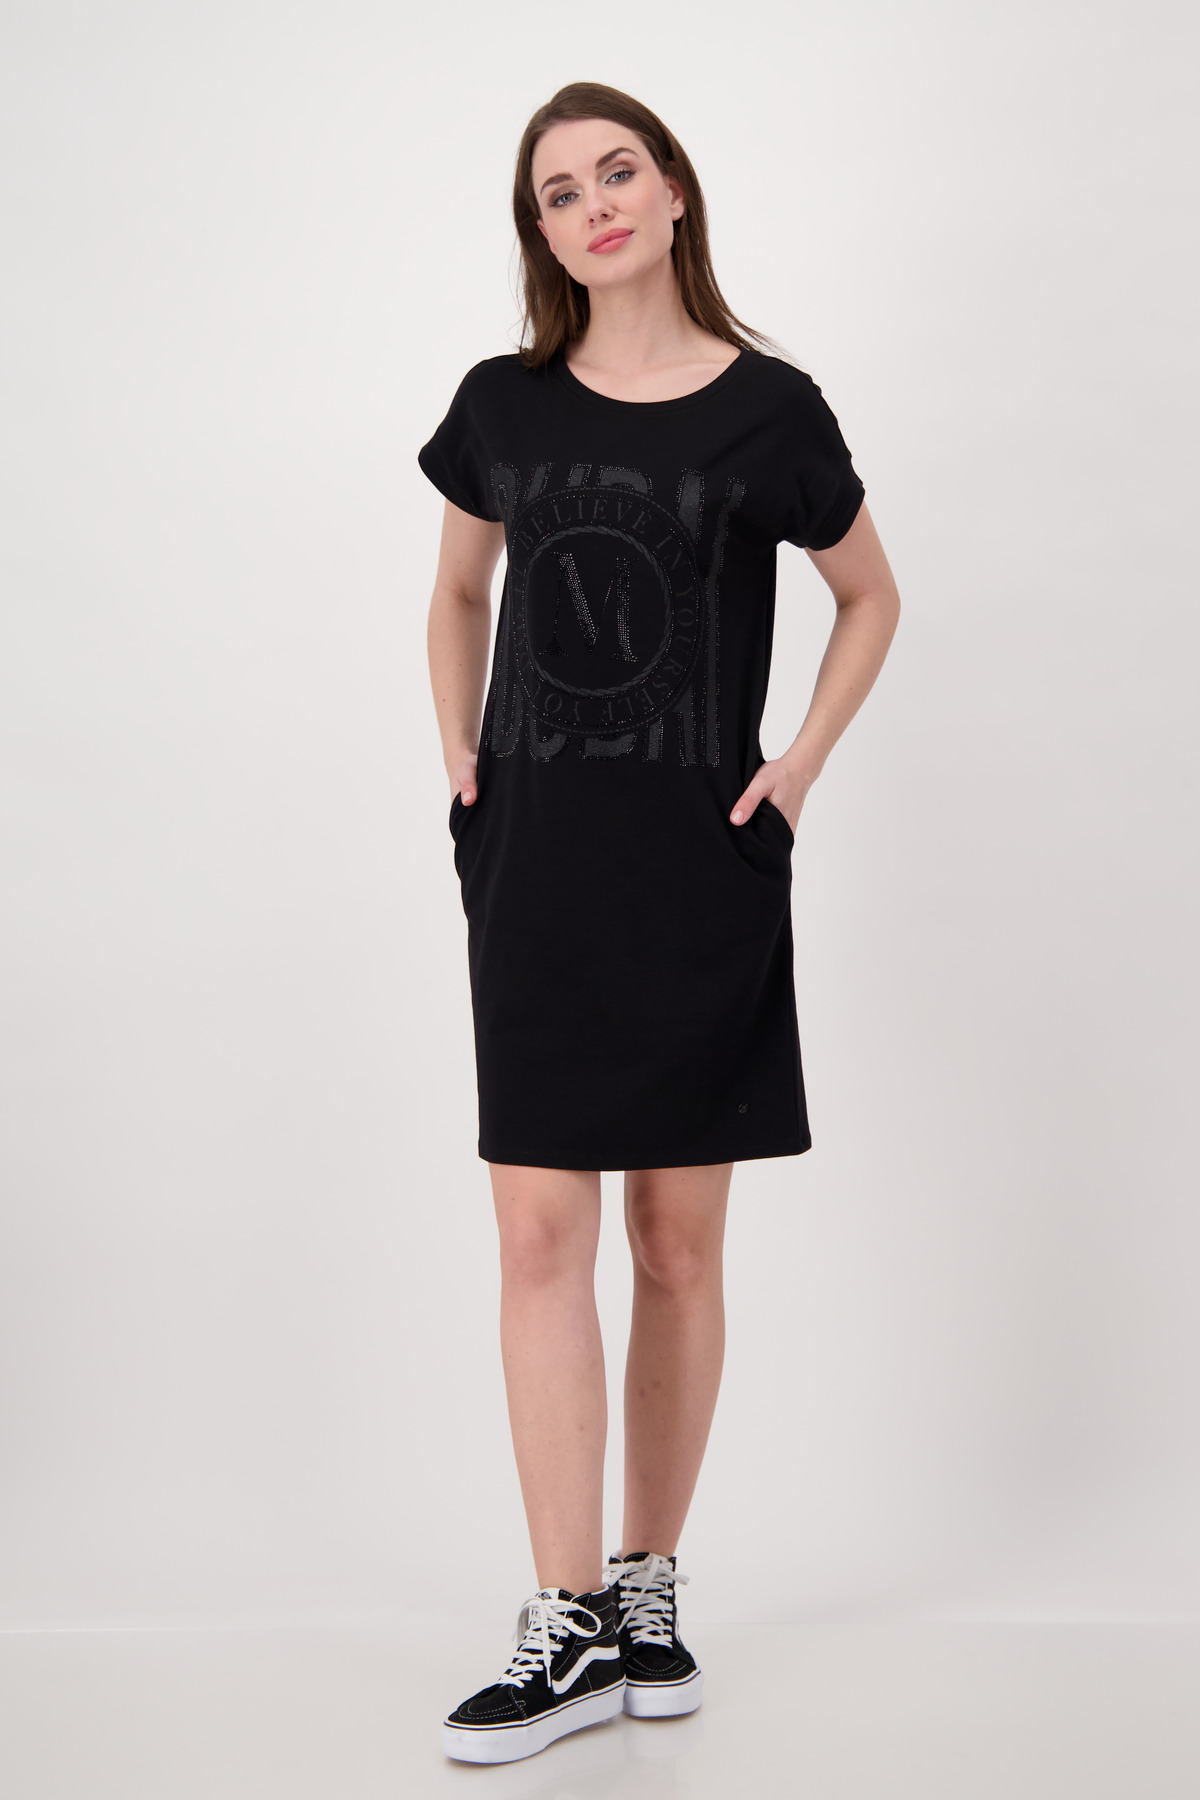 Mode Hartmann Shop Monari Kleid, - schwarz